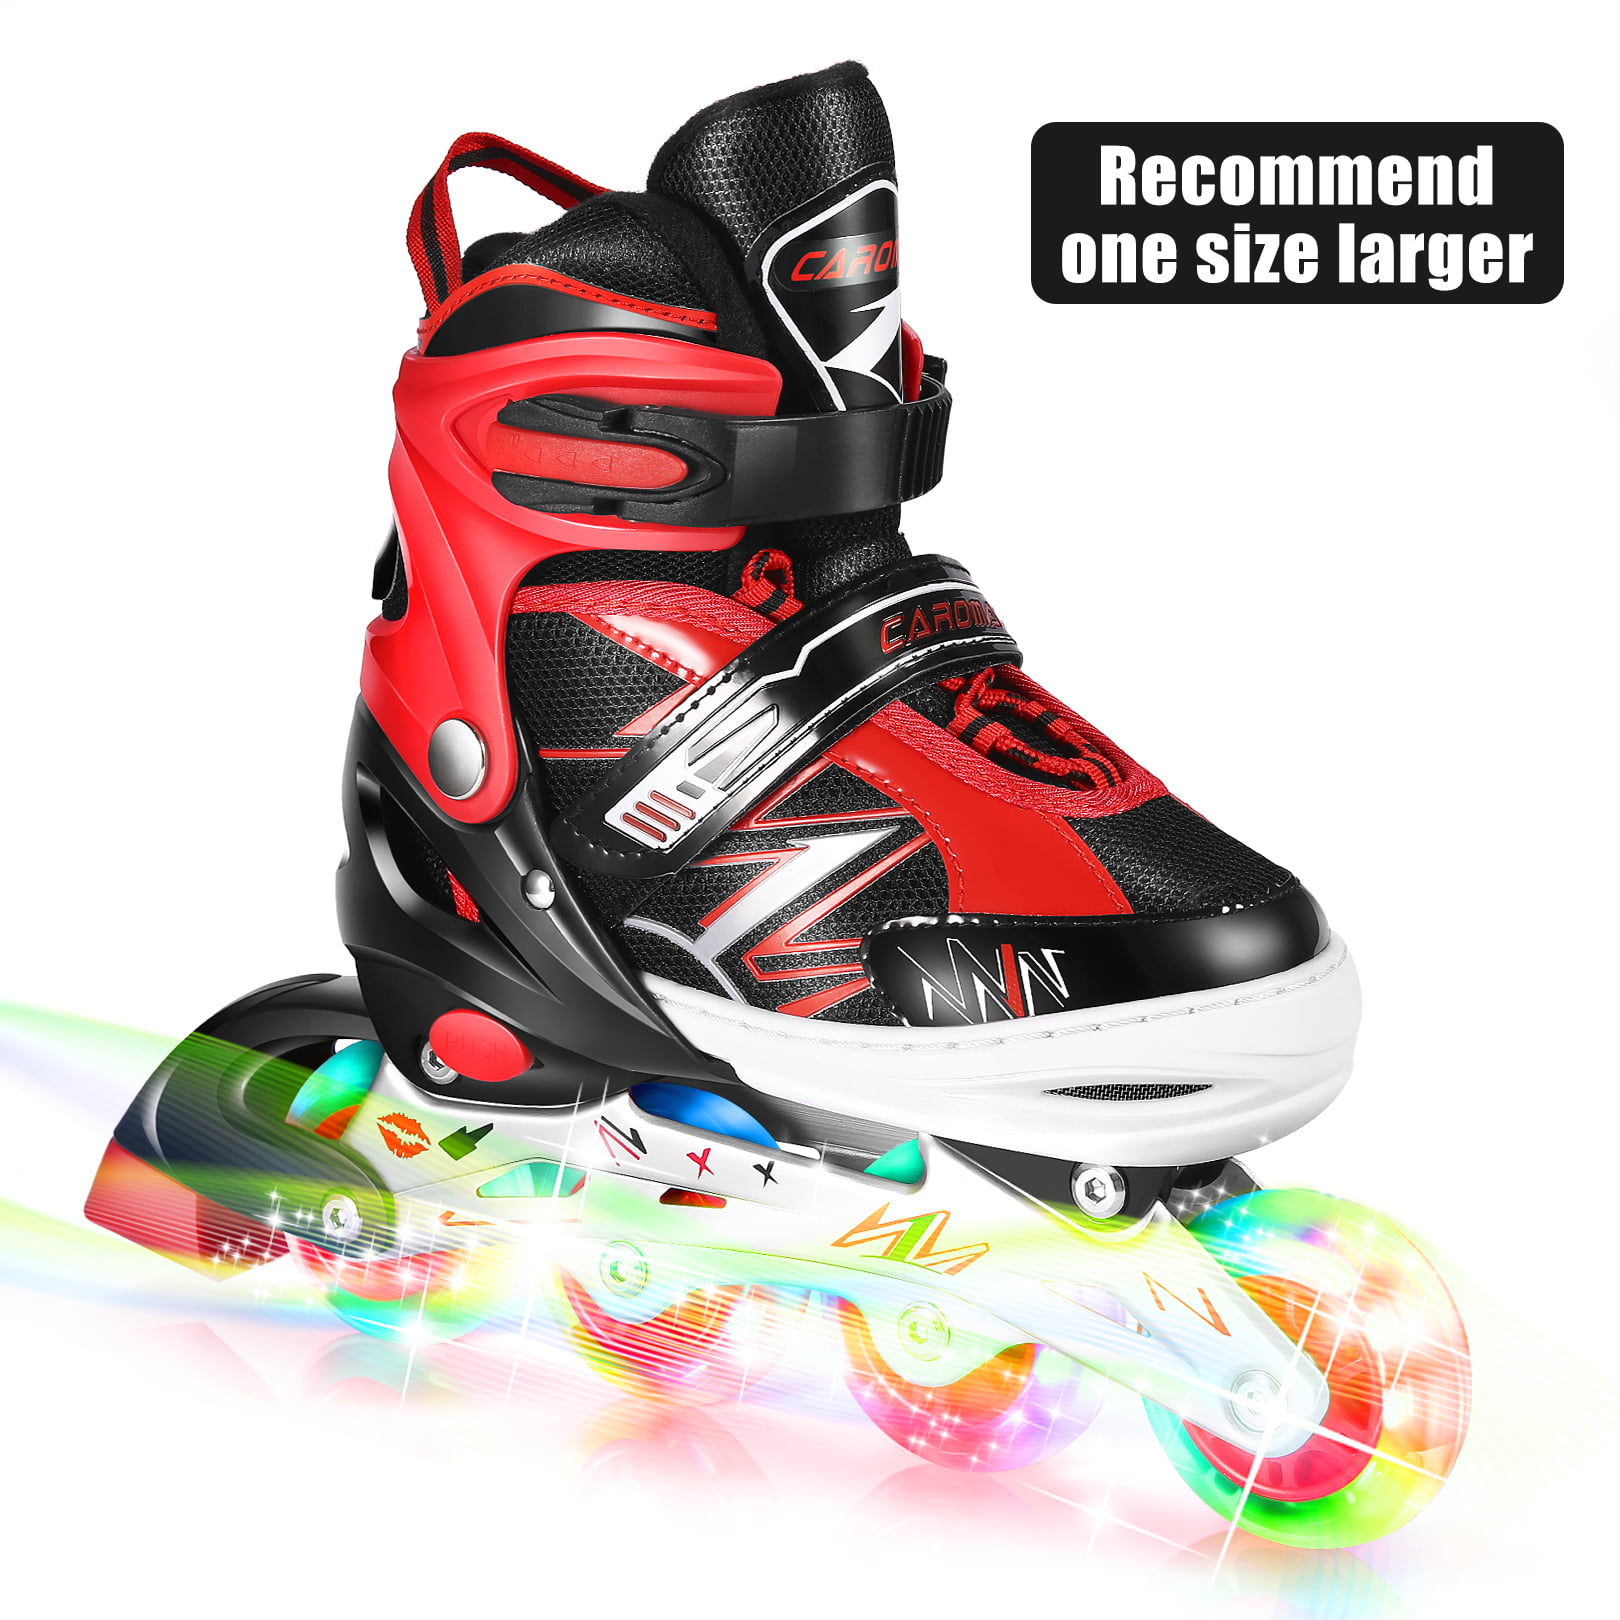 New Inline Skates for Men/Women Size 8-11 Adjustable Roller Blades-Hot Gift BEST 